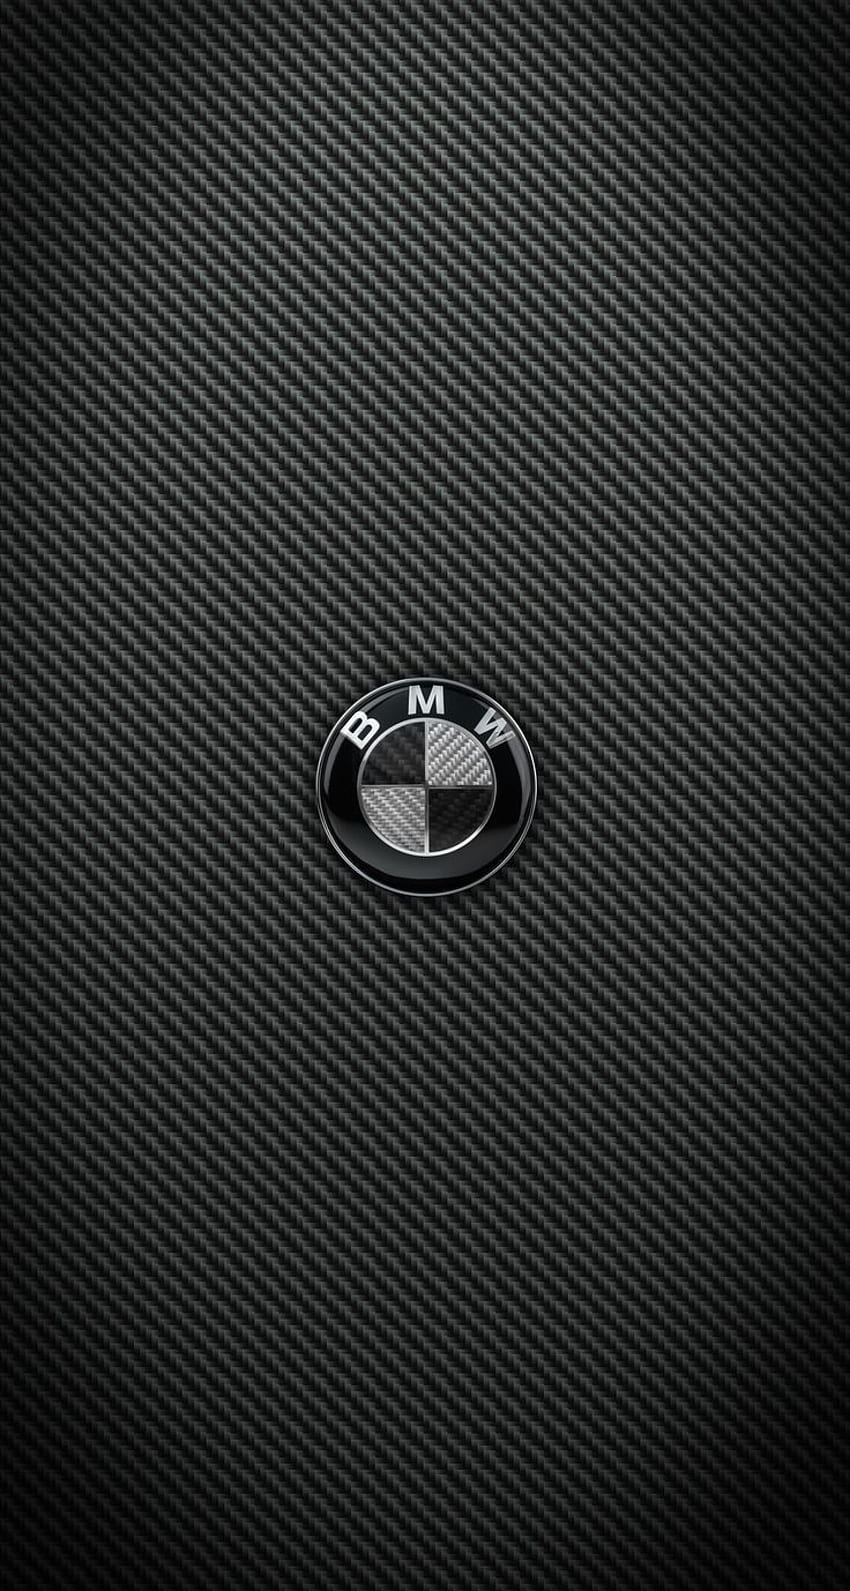 Carbon Fiber BMW und M Power iPhone für iPhone 6 Plus - Robert McNeill - HD phone wallpaper